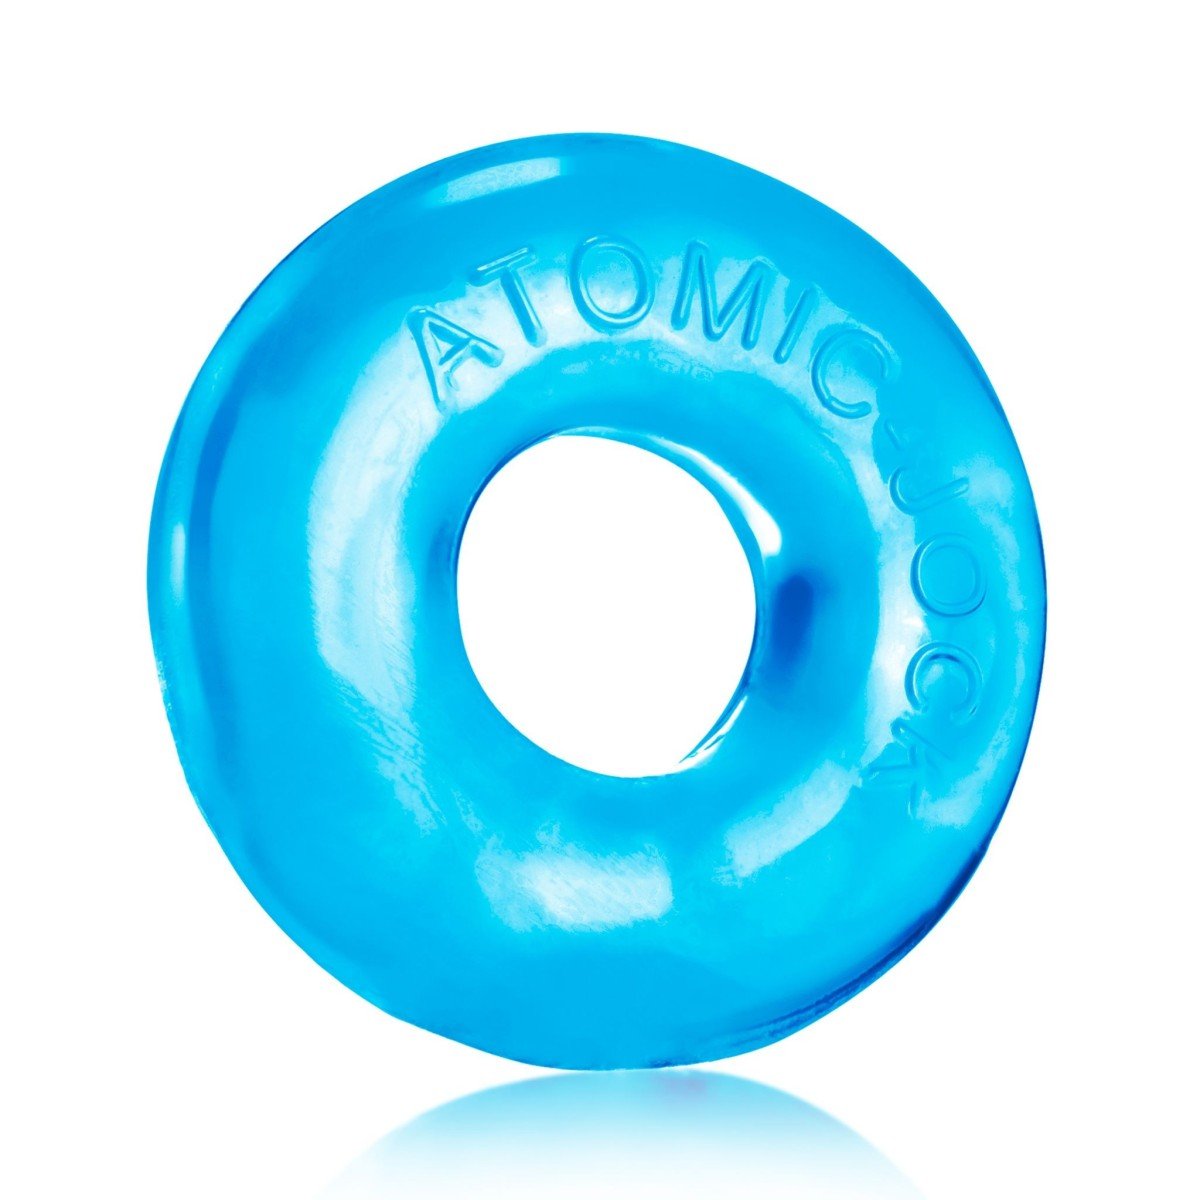 Erekčný krúžok Oxballs Do-Nut 2 modrý, elastický krúžok na penis